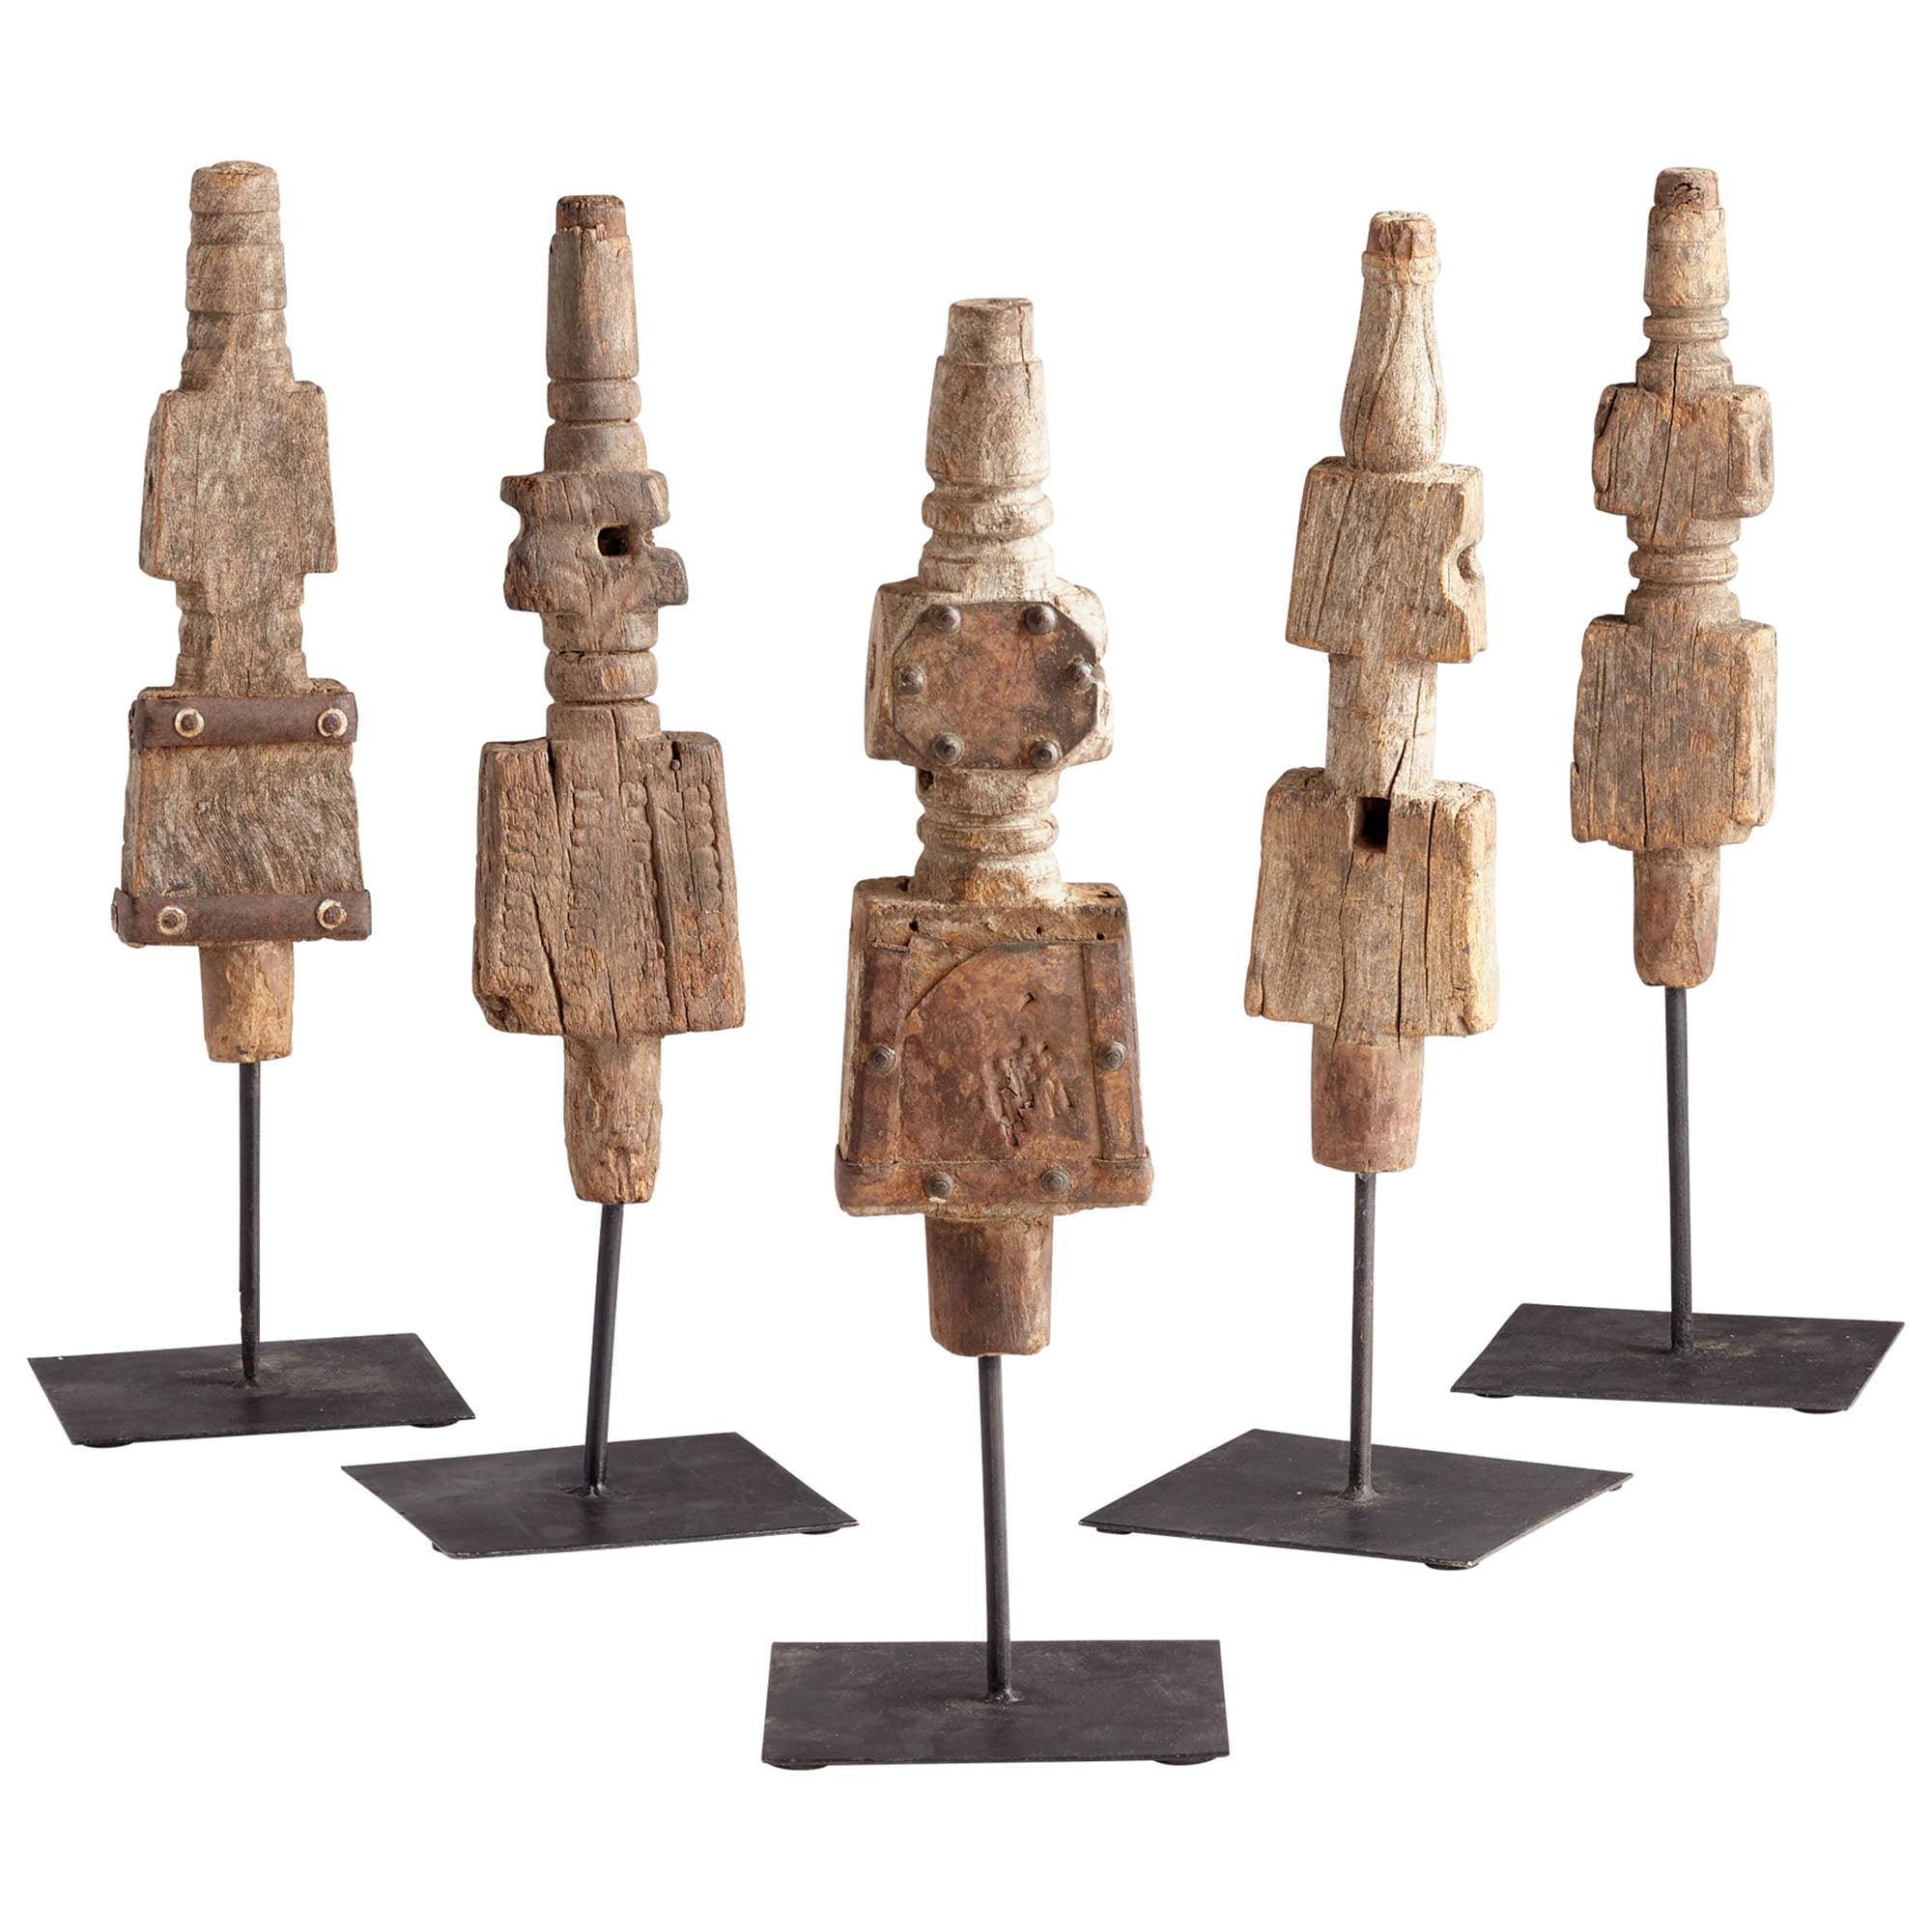 Rustic Brown Wood Totem Sculpture 5"x16"